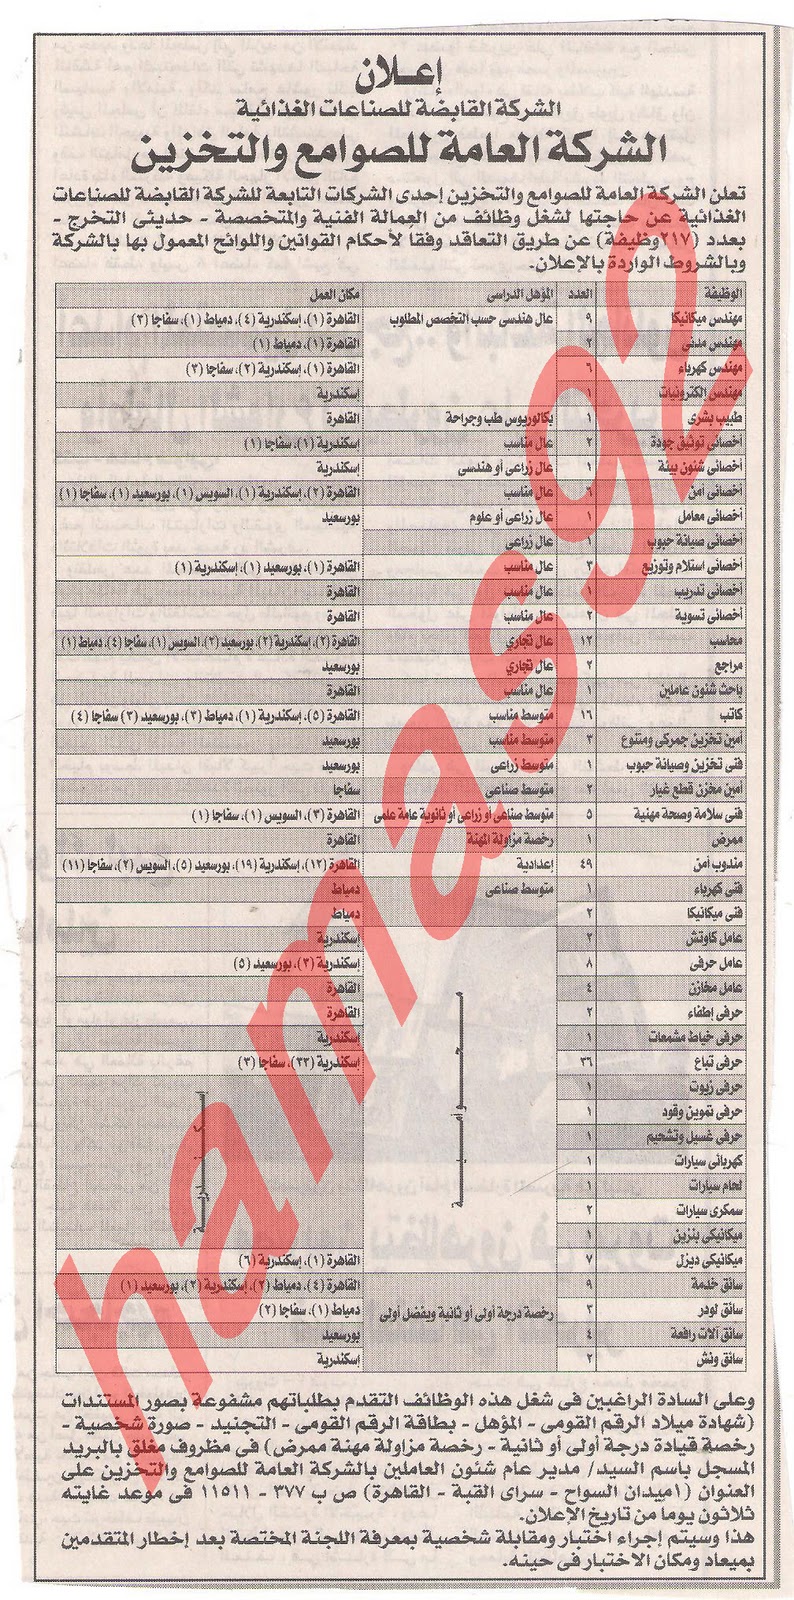  وظائف خالية من جريدة الوفد الثلاثاء 27 ديسمبر 2011  Picture+005